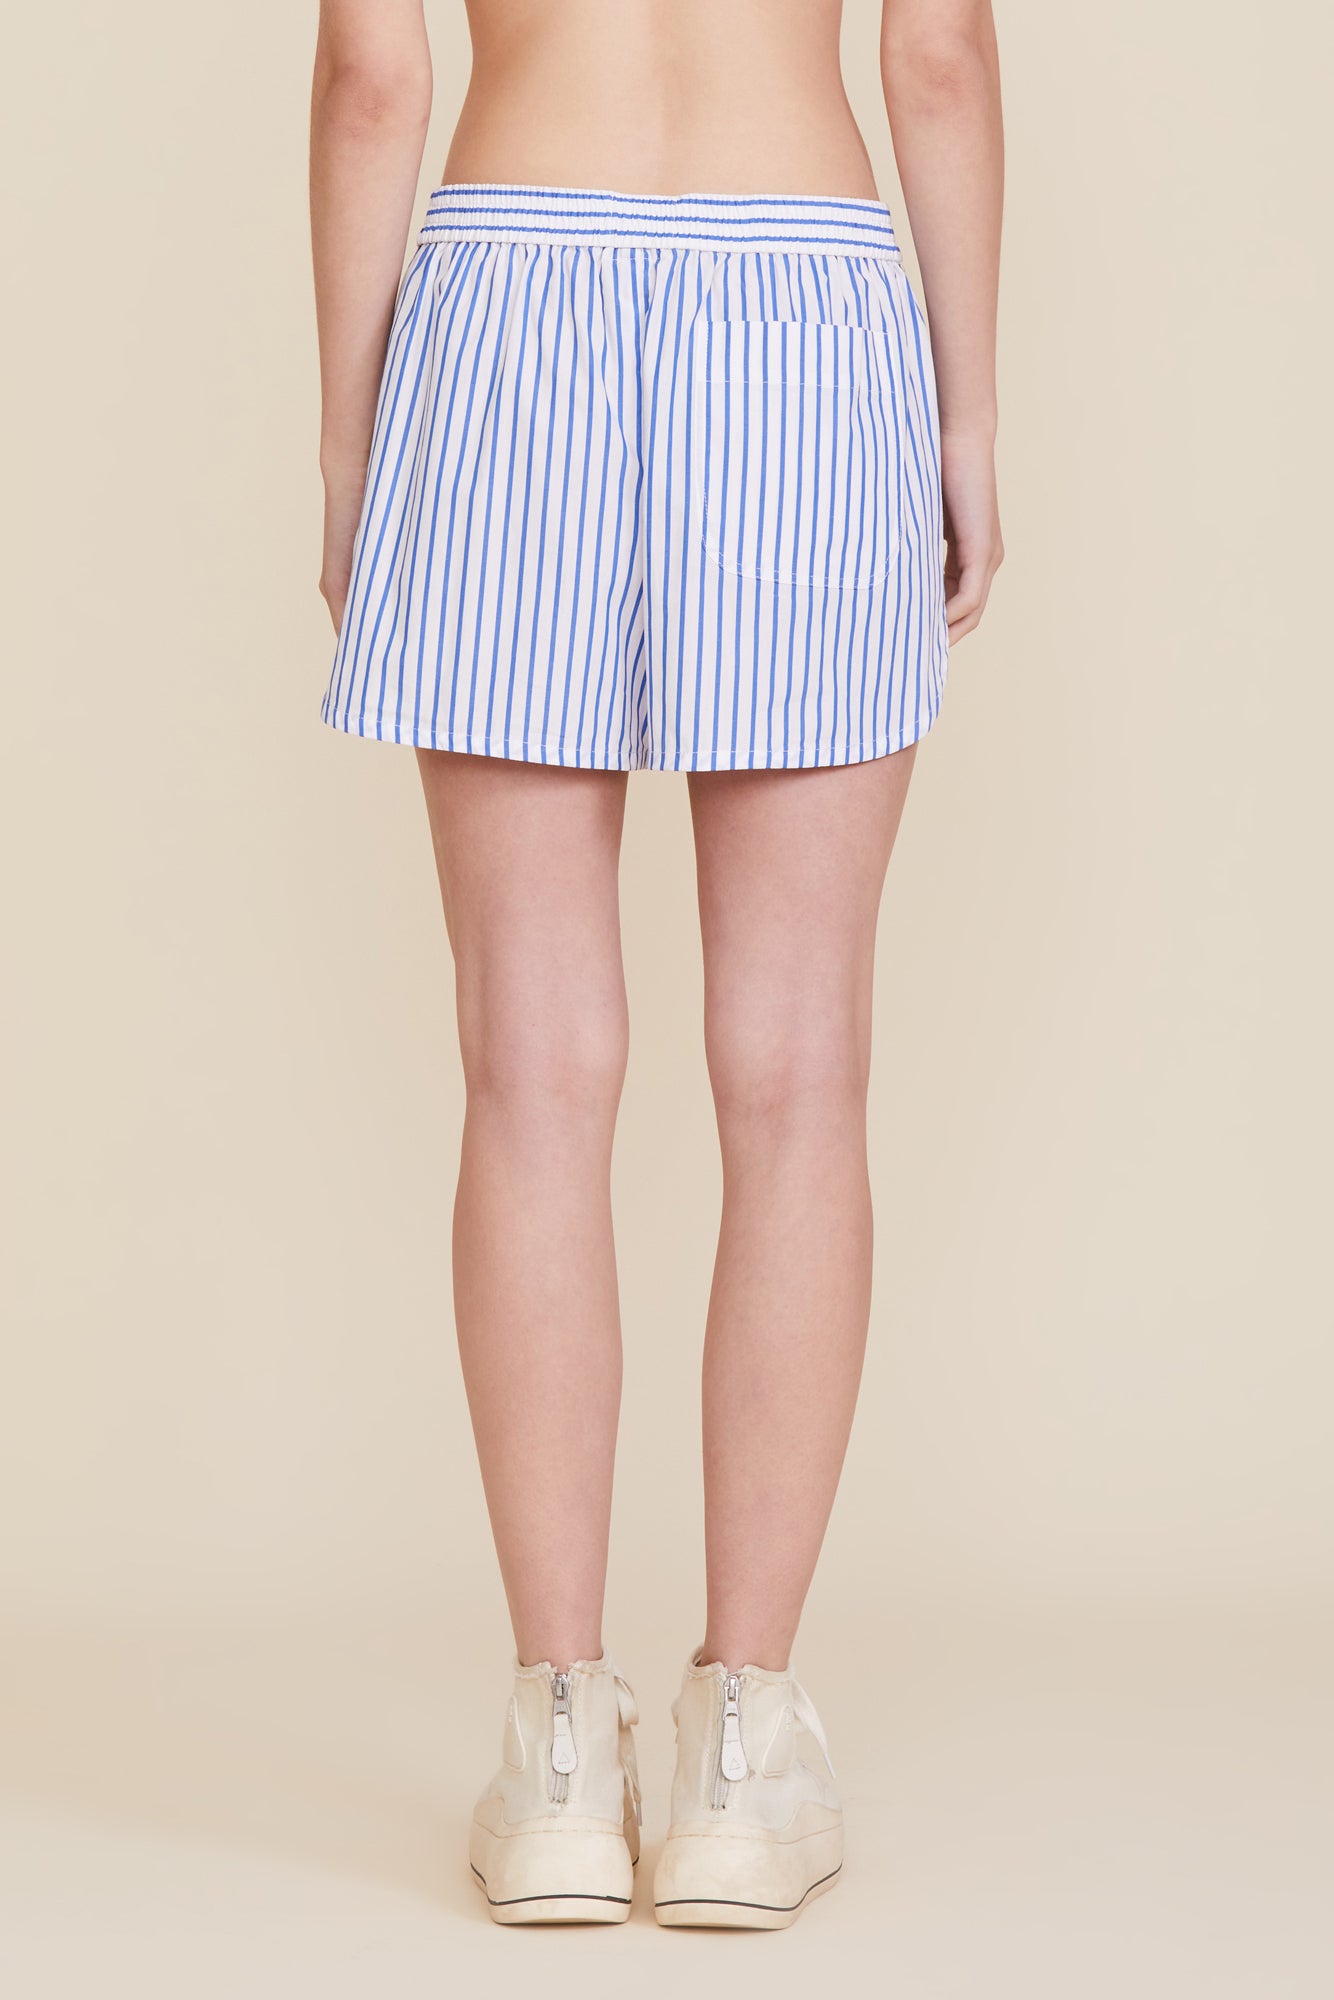 PJ Shorts - Blue Stripe